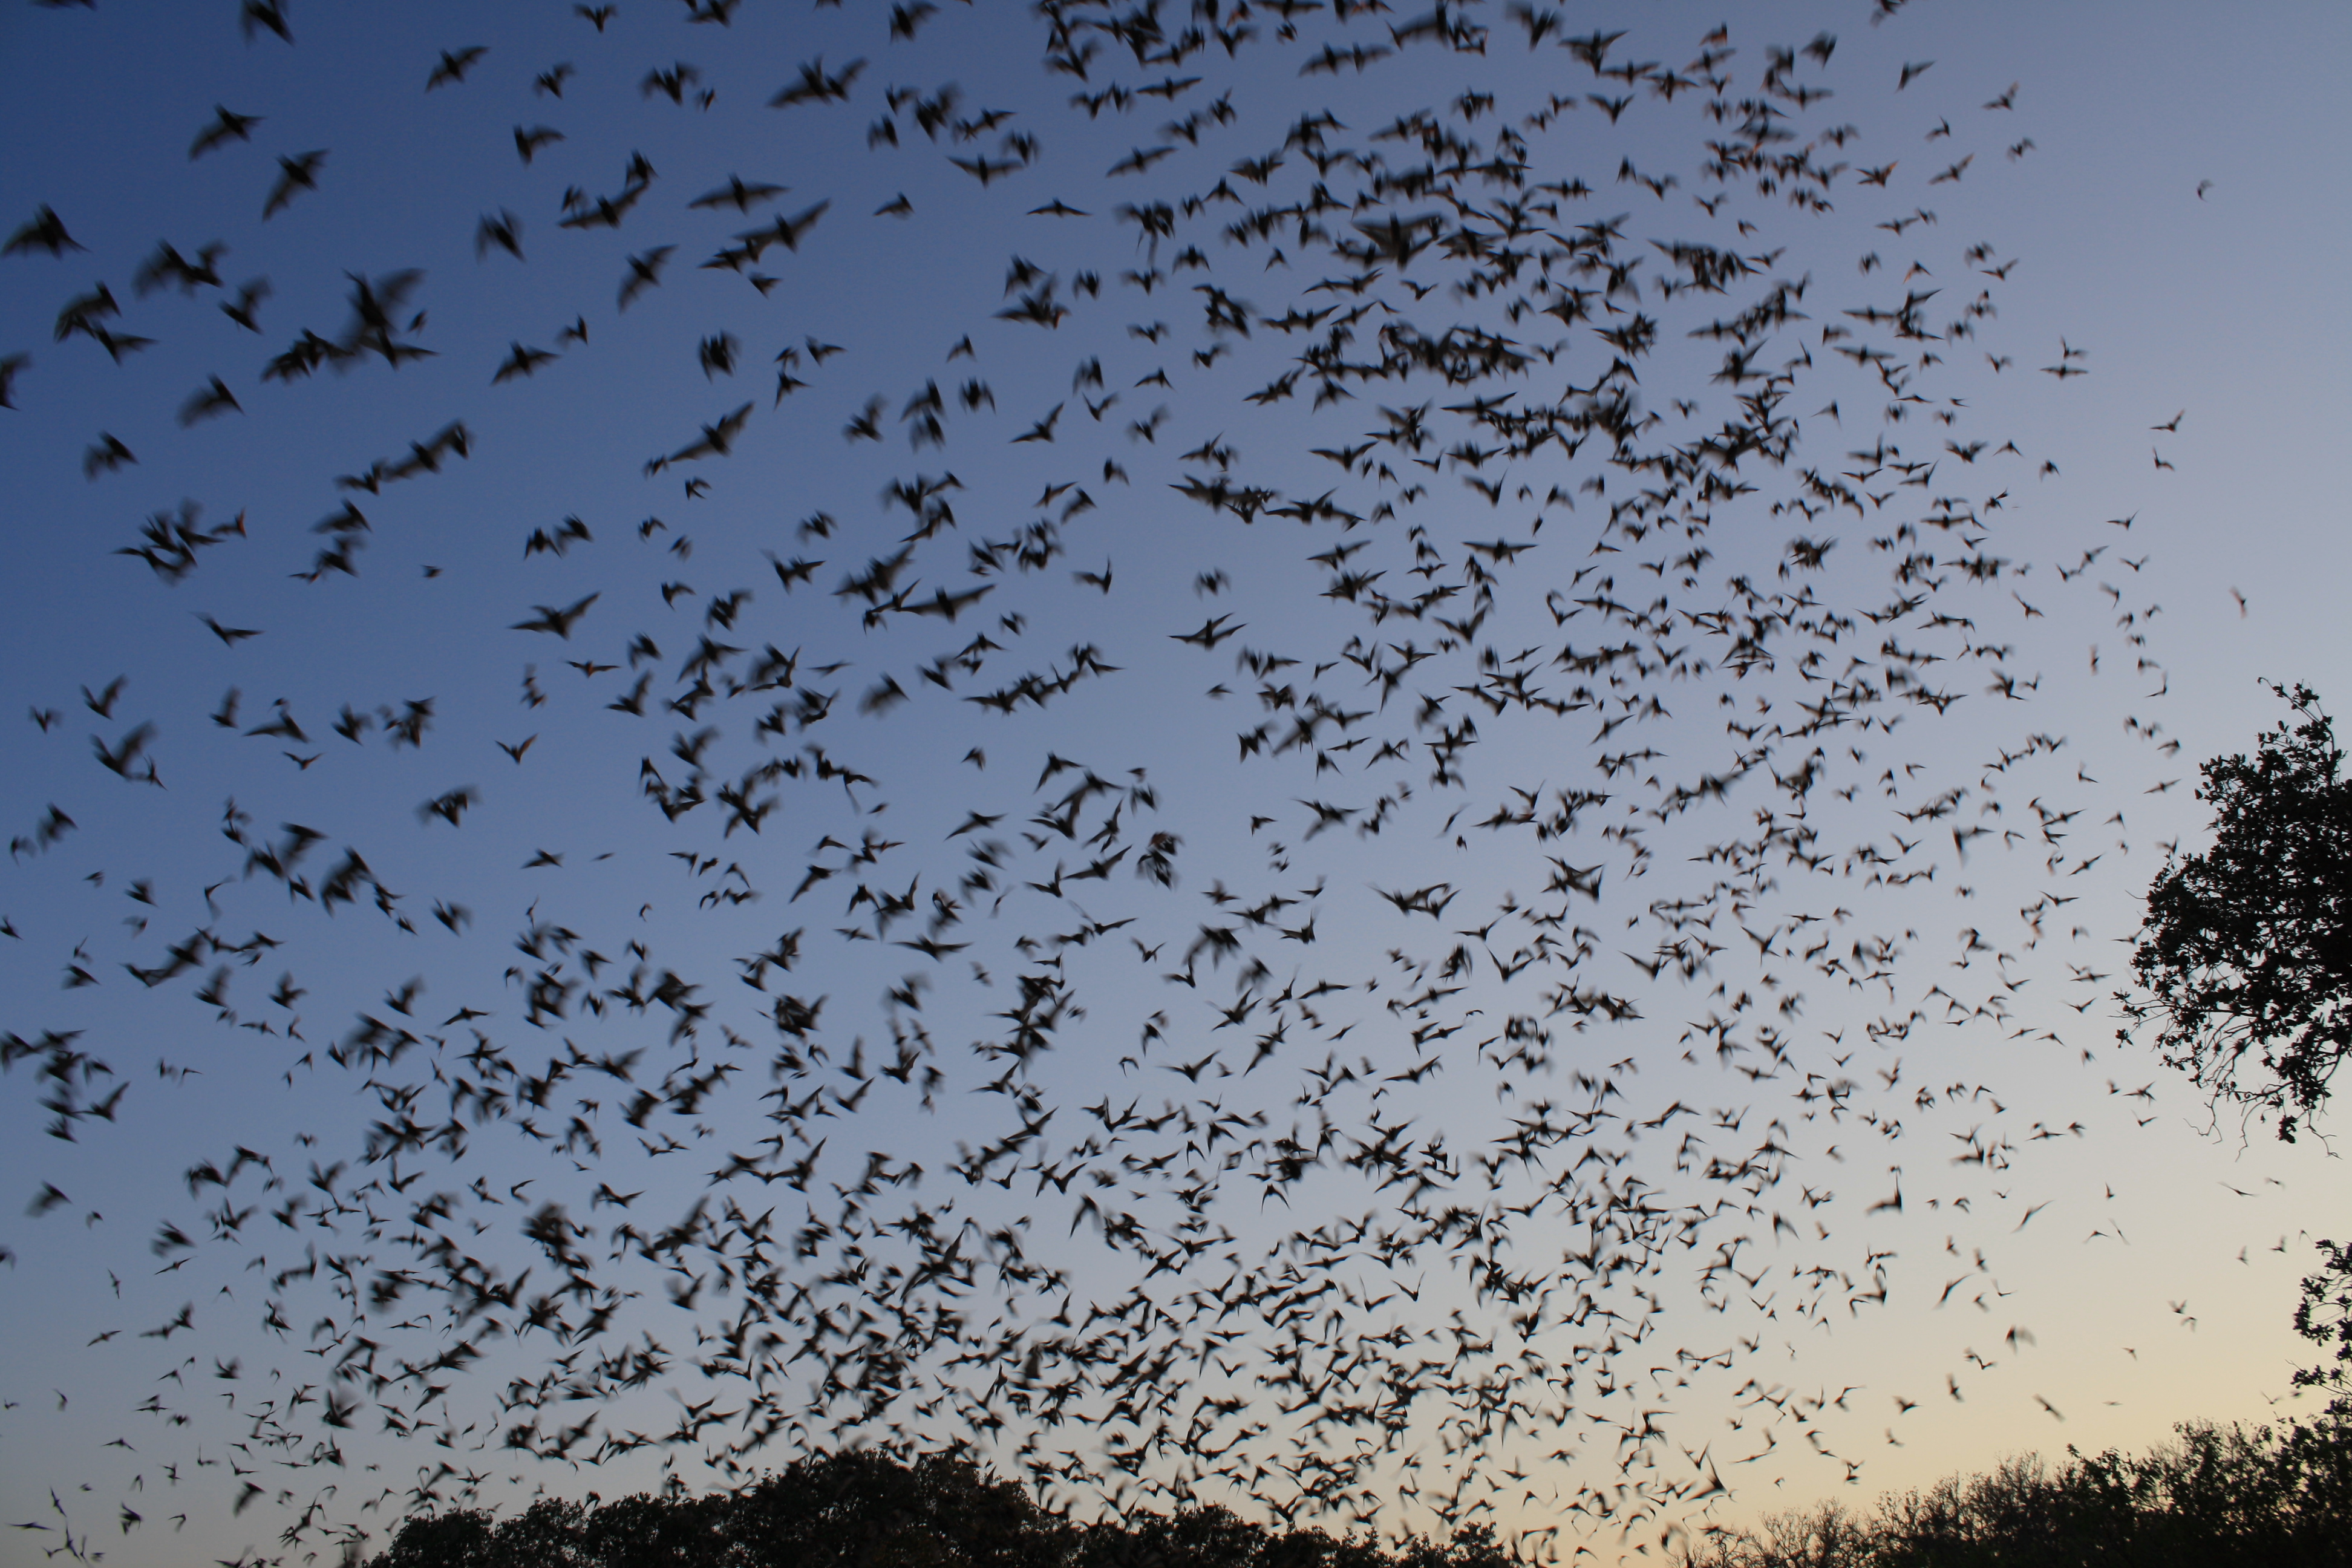 A flock of bats at twilight